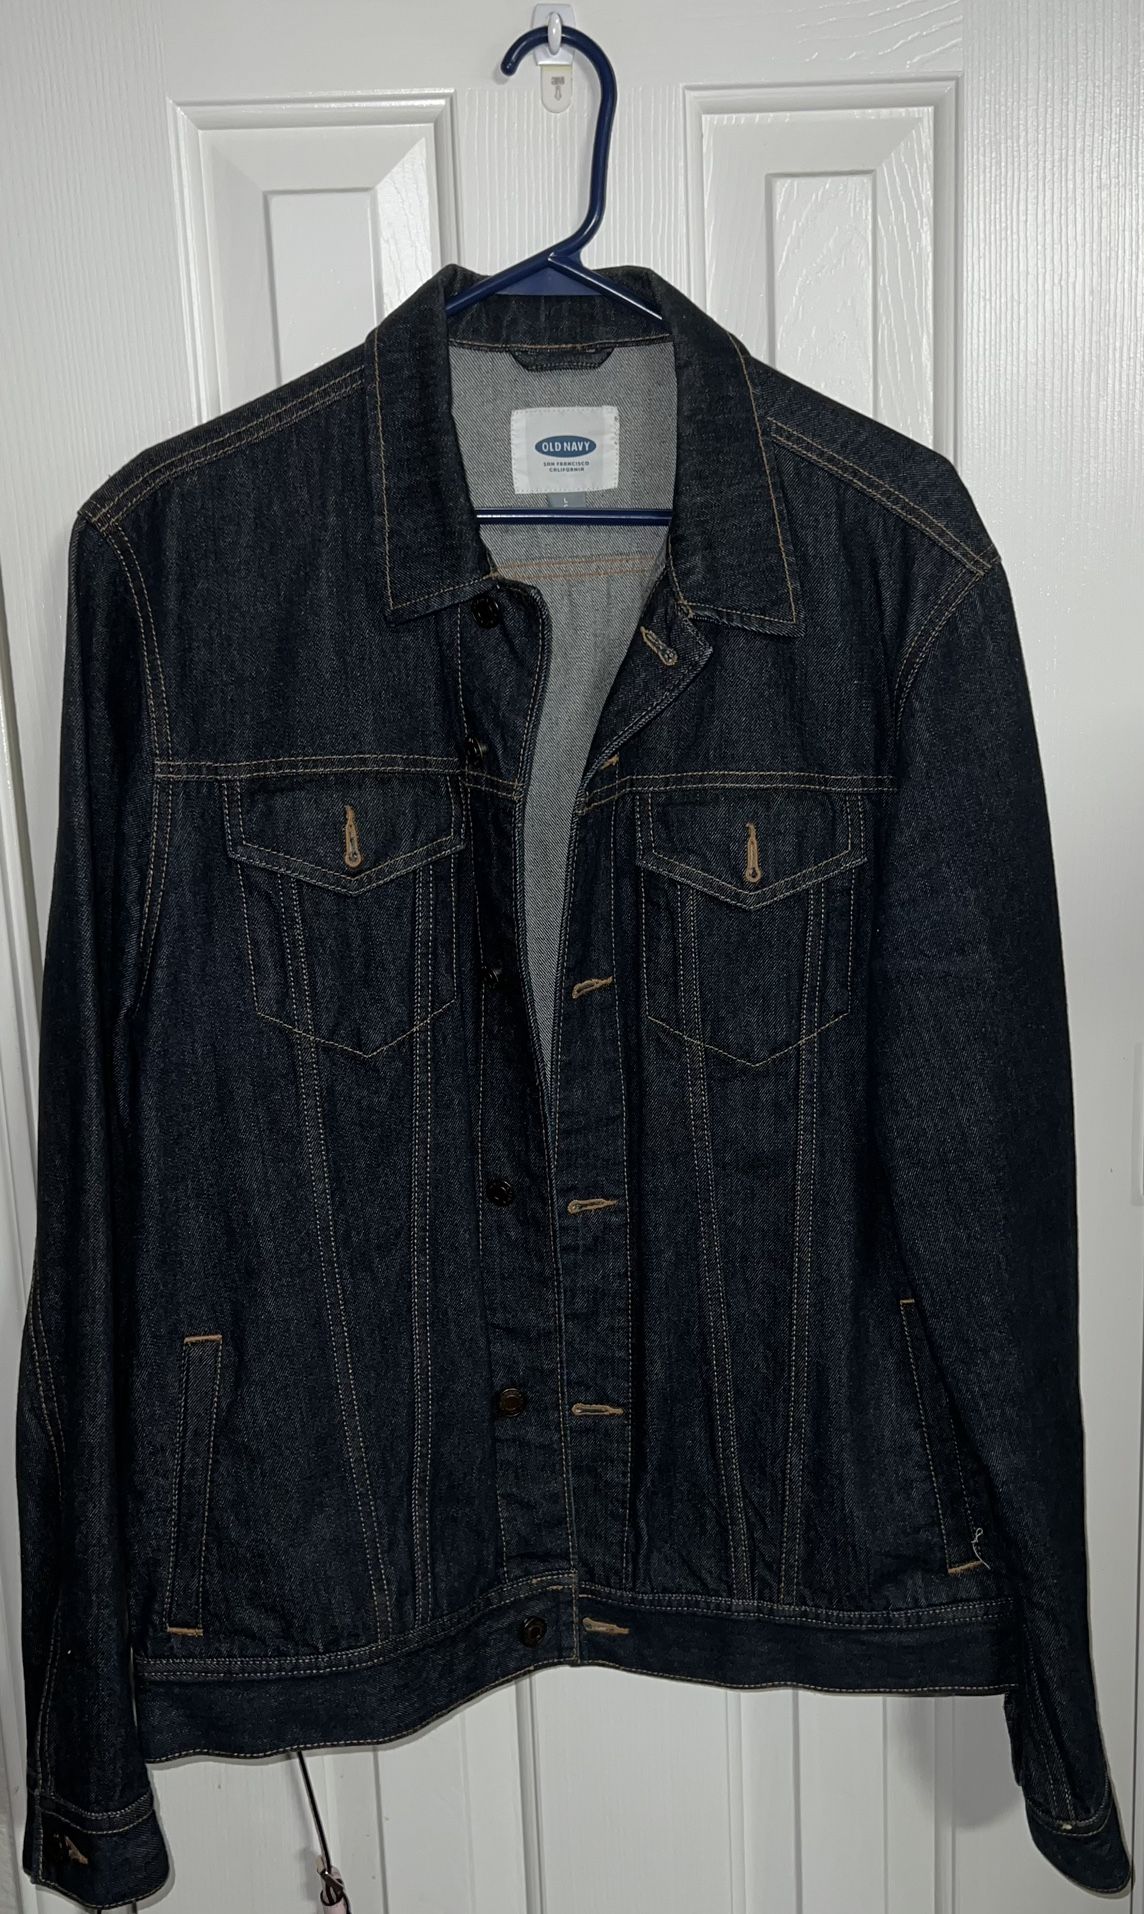 Men’s Blue Jean Jacket Size Medium